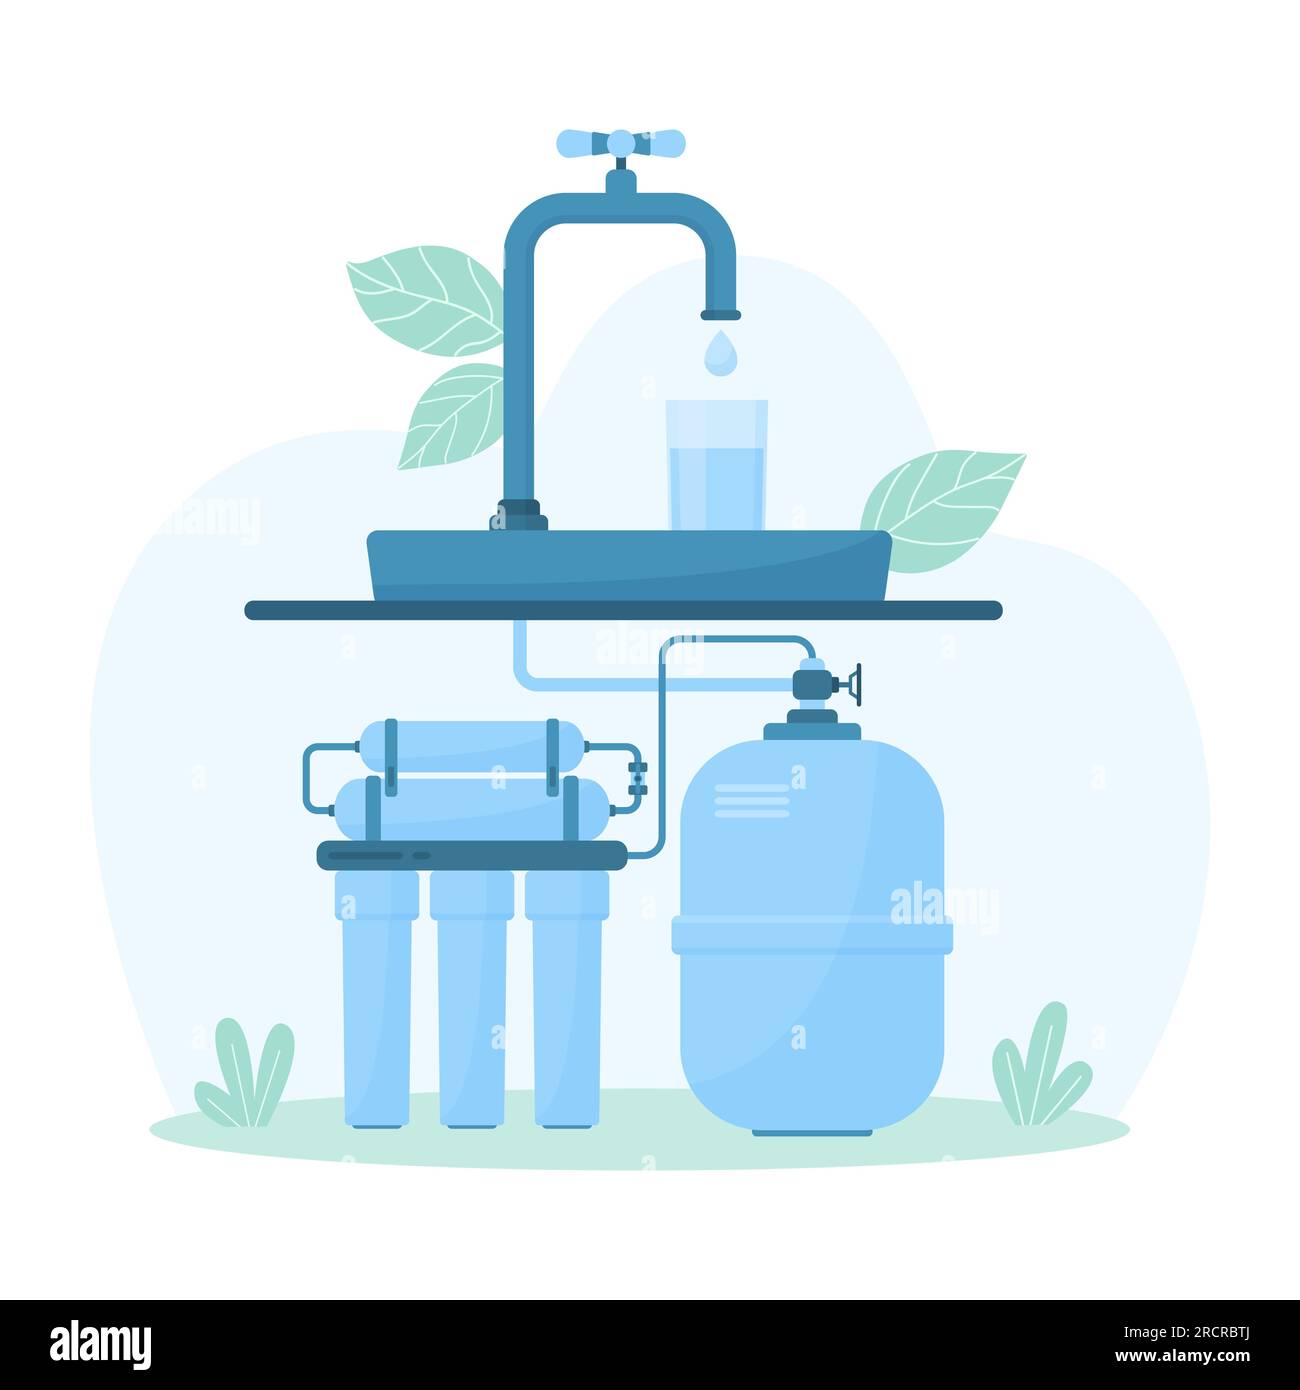 Vectores e ilustraciones de Sistema filtracion agua para descargar gratis